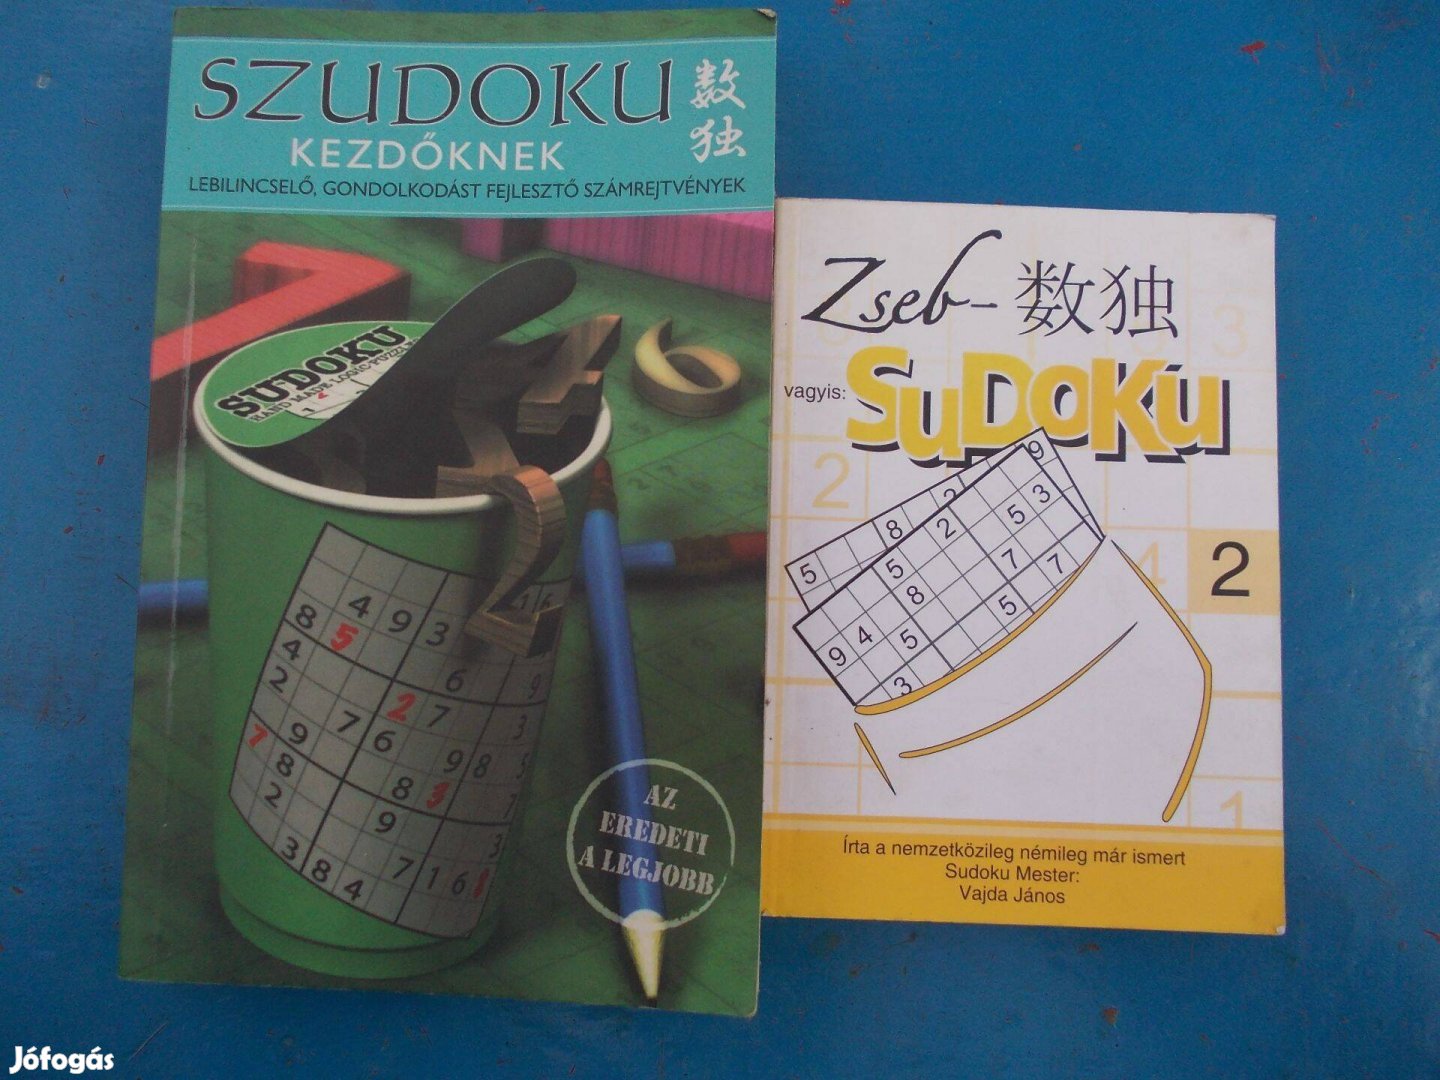 Eladó rejtvénykedvelőknek Sudoku rejtvények